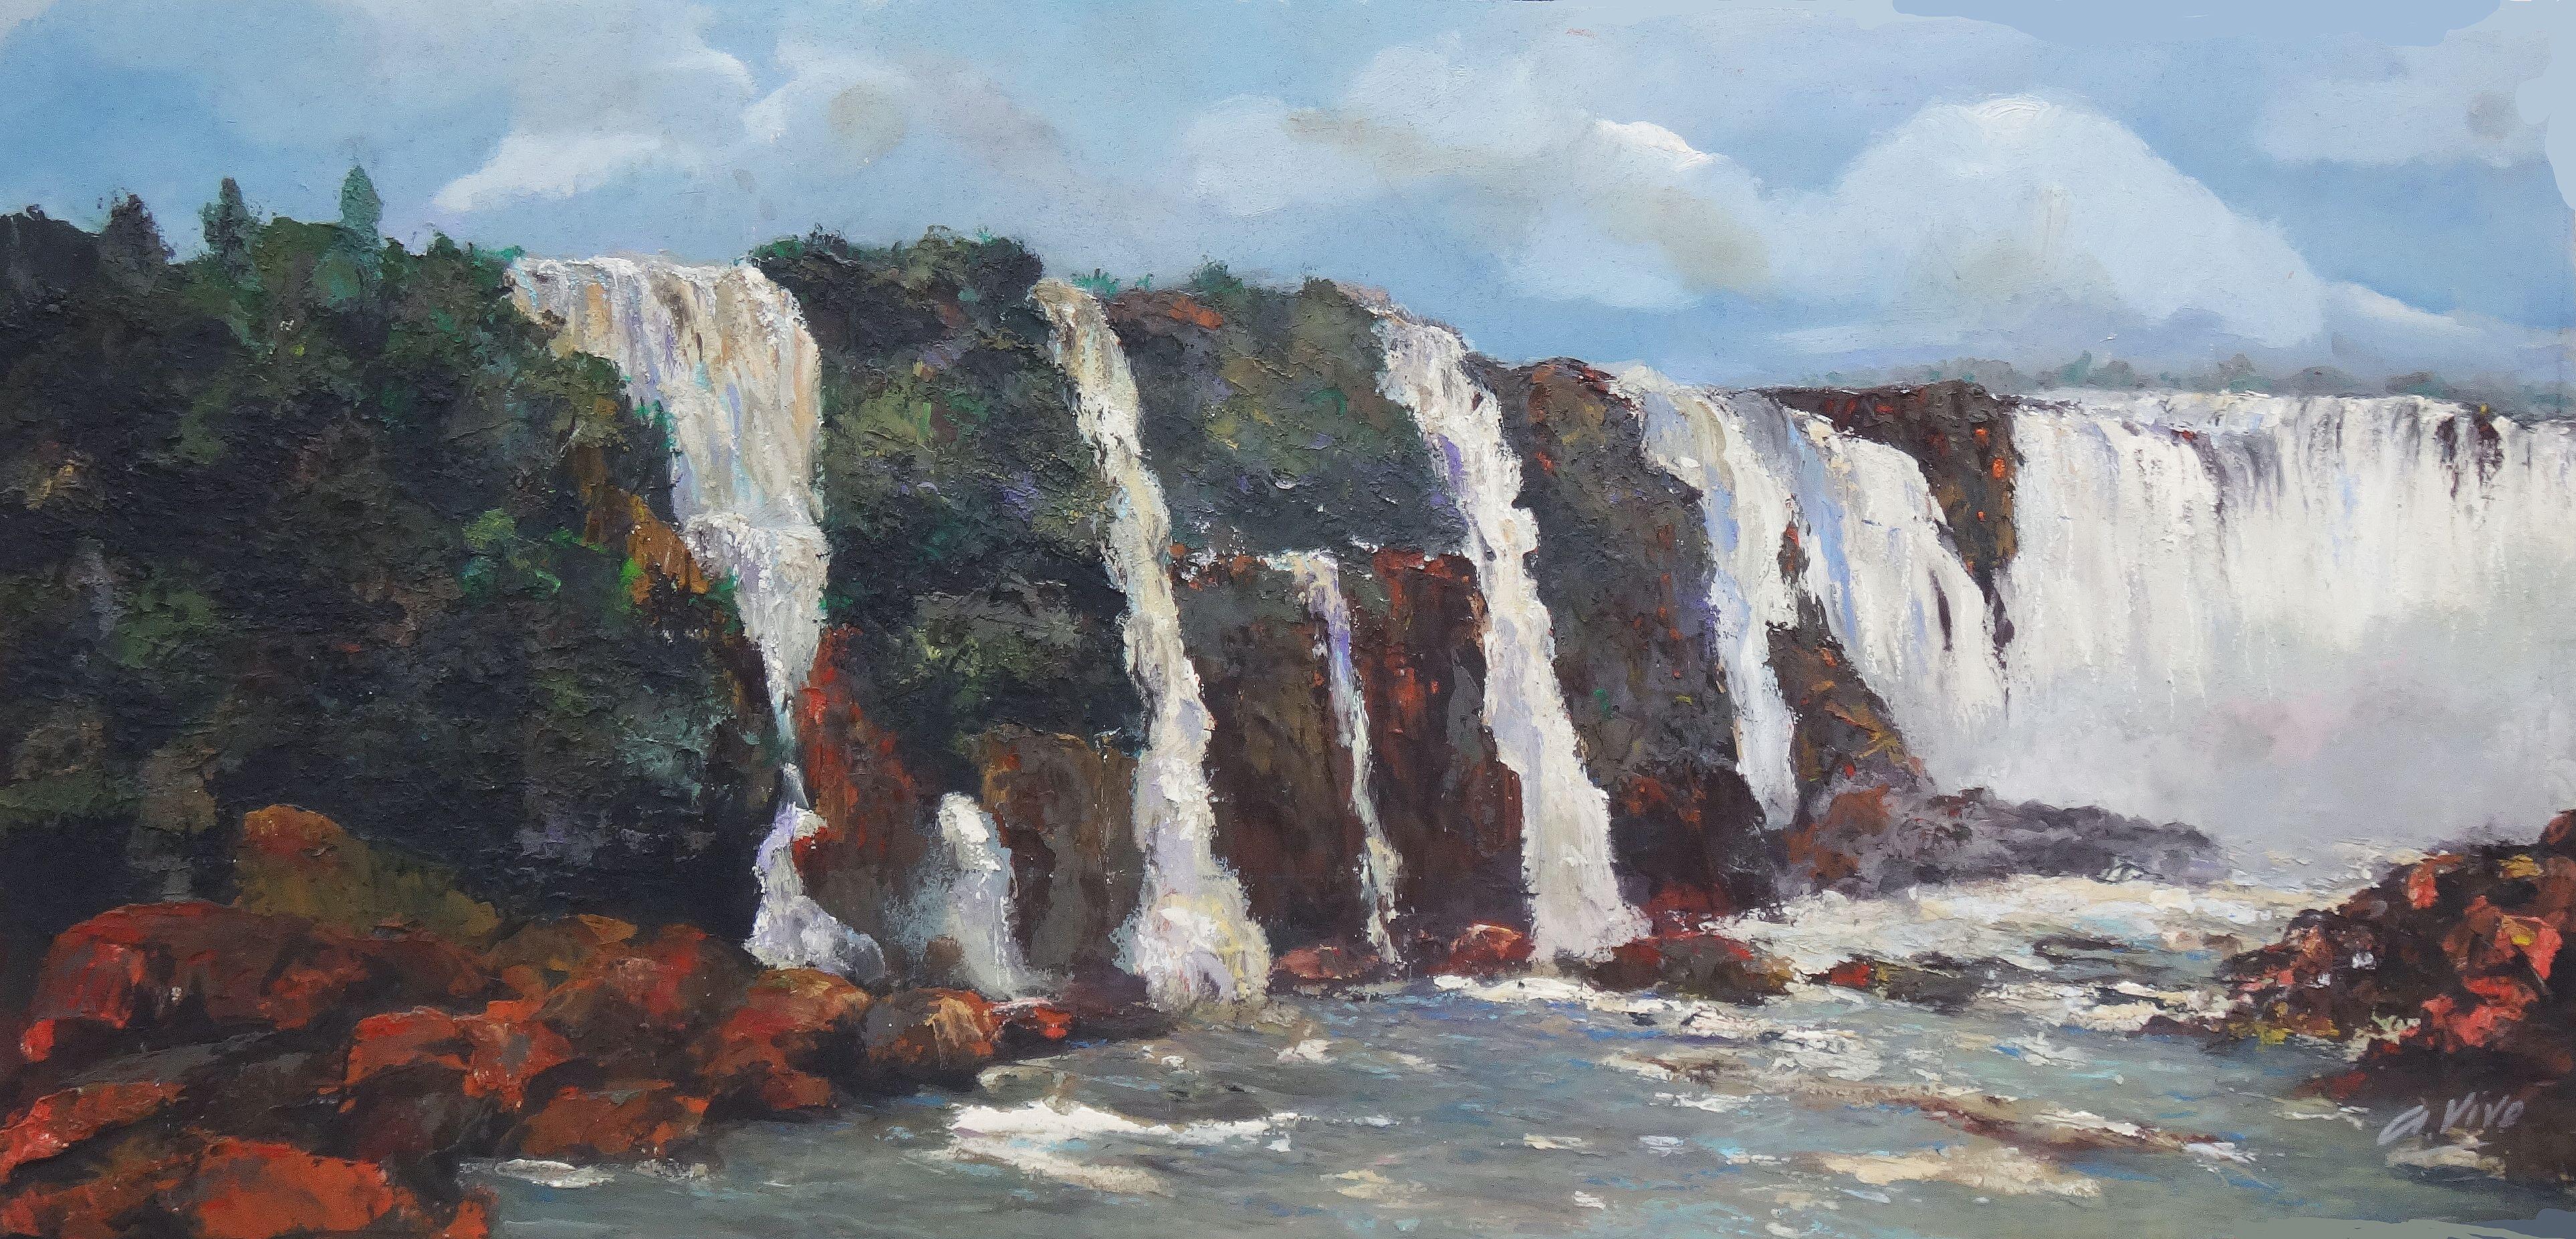 Landscape Painting Andres Vivo - 3388 chutes d'Iguazu  Avant la tempête tropicale, peinture à l'huile sur panneau de MDF